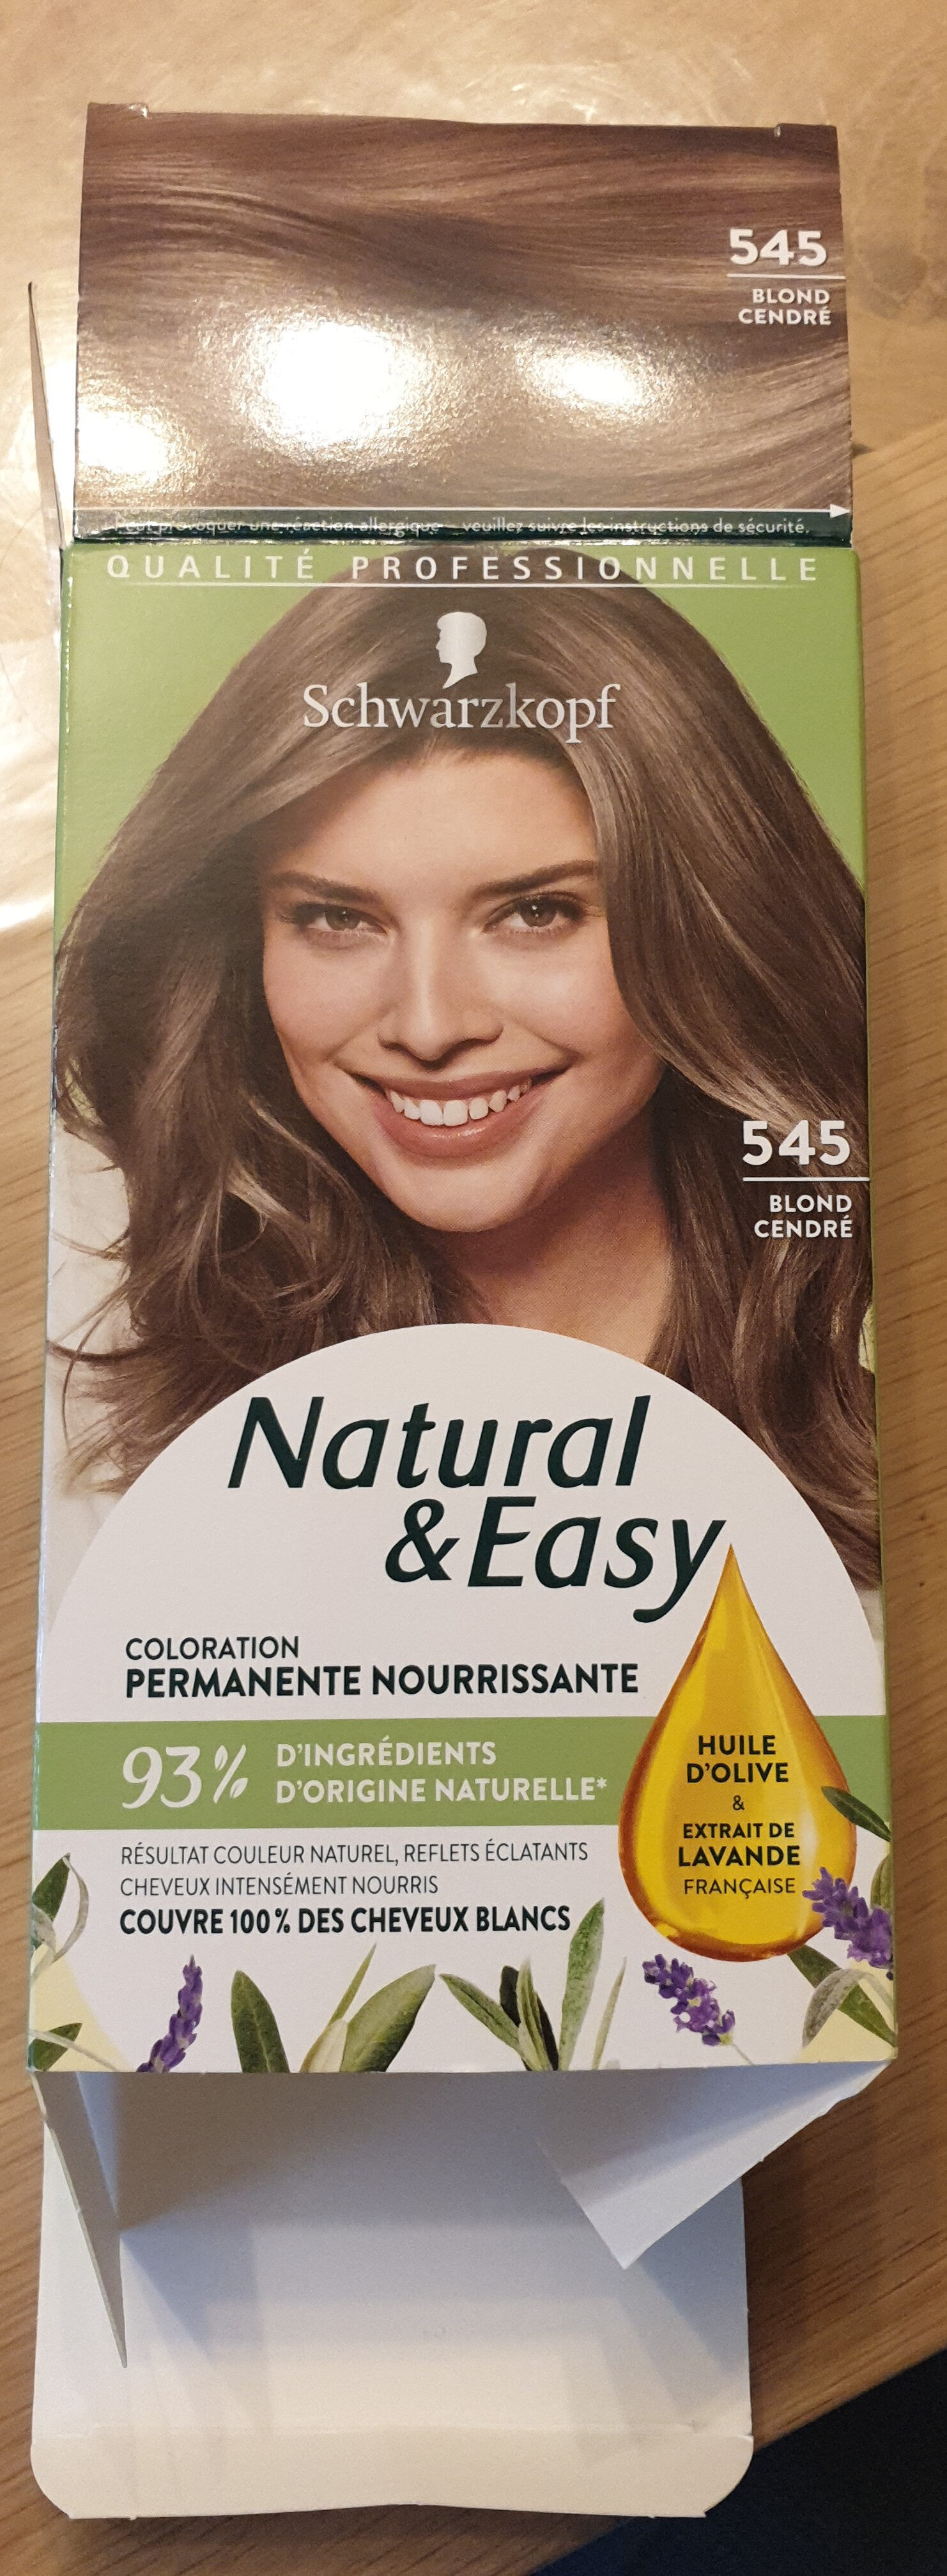 Natural & Easy 545 blond cendré - Produkt - fr